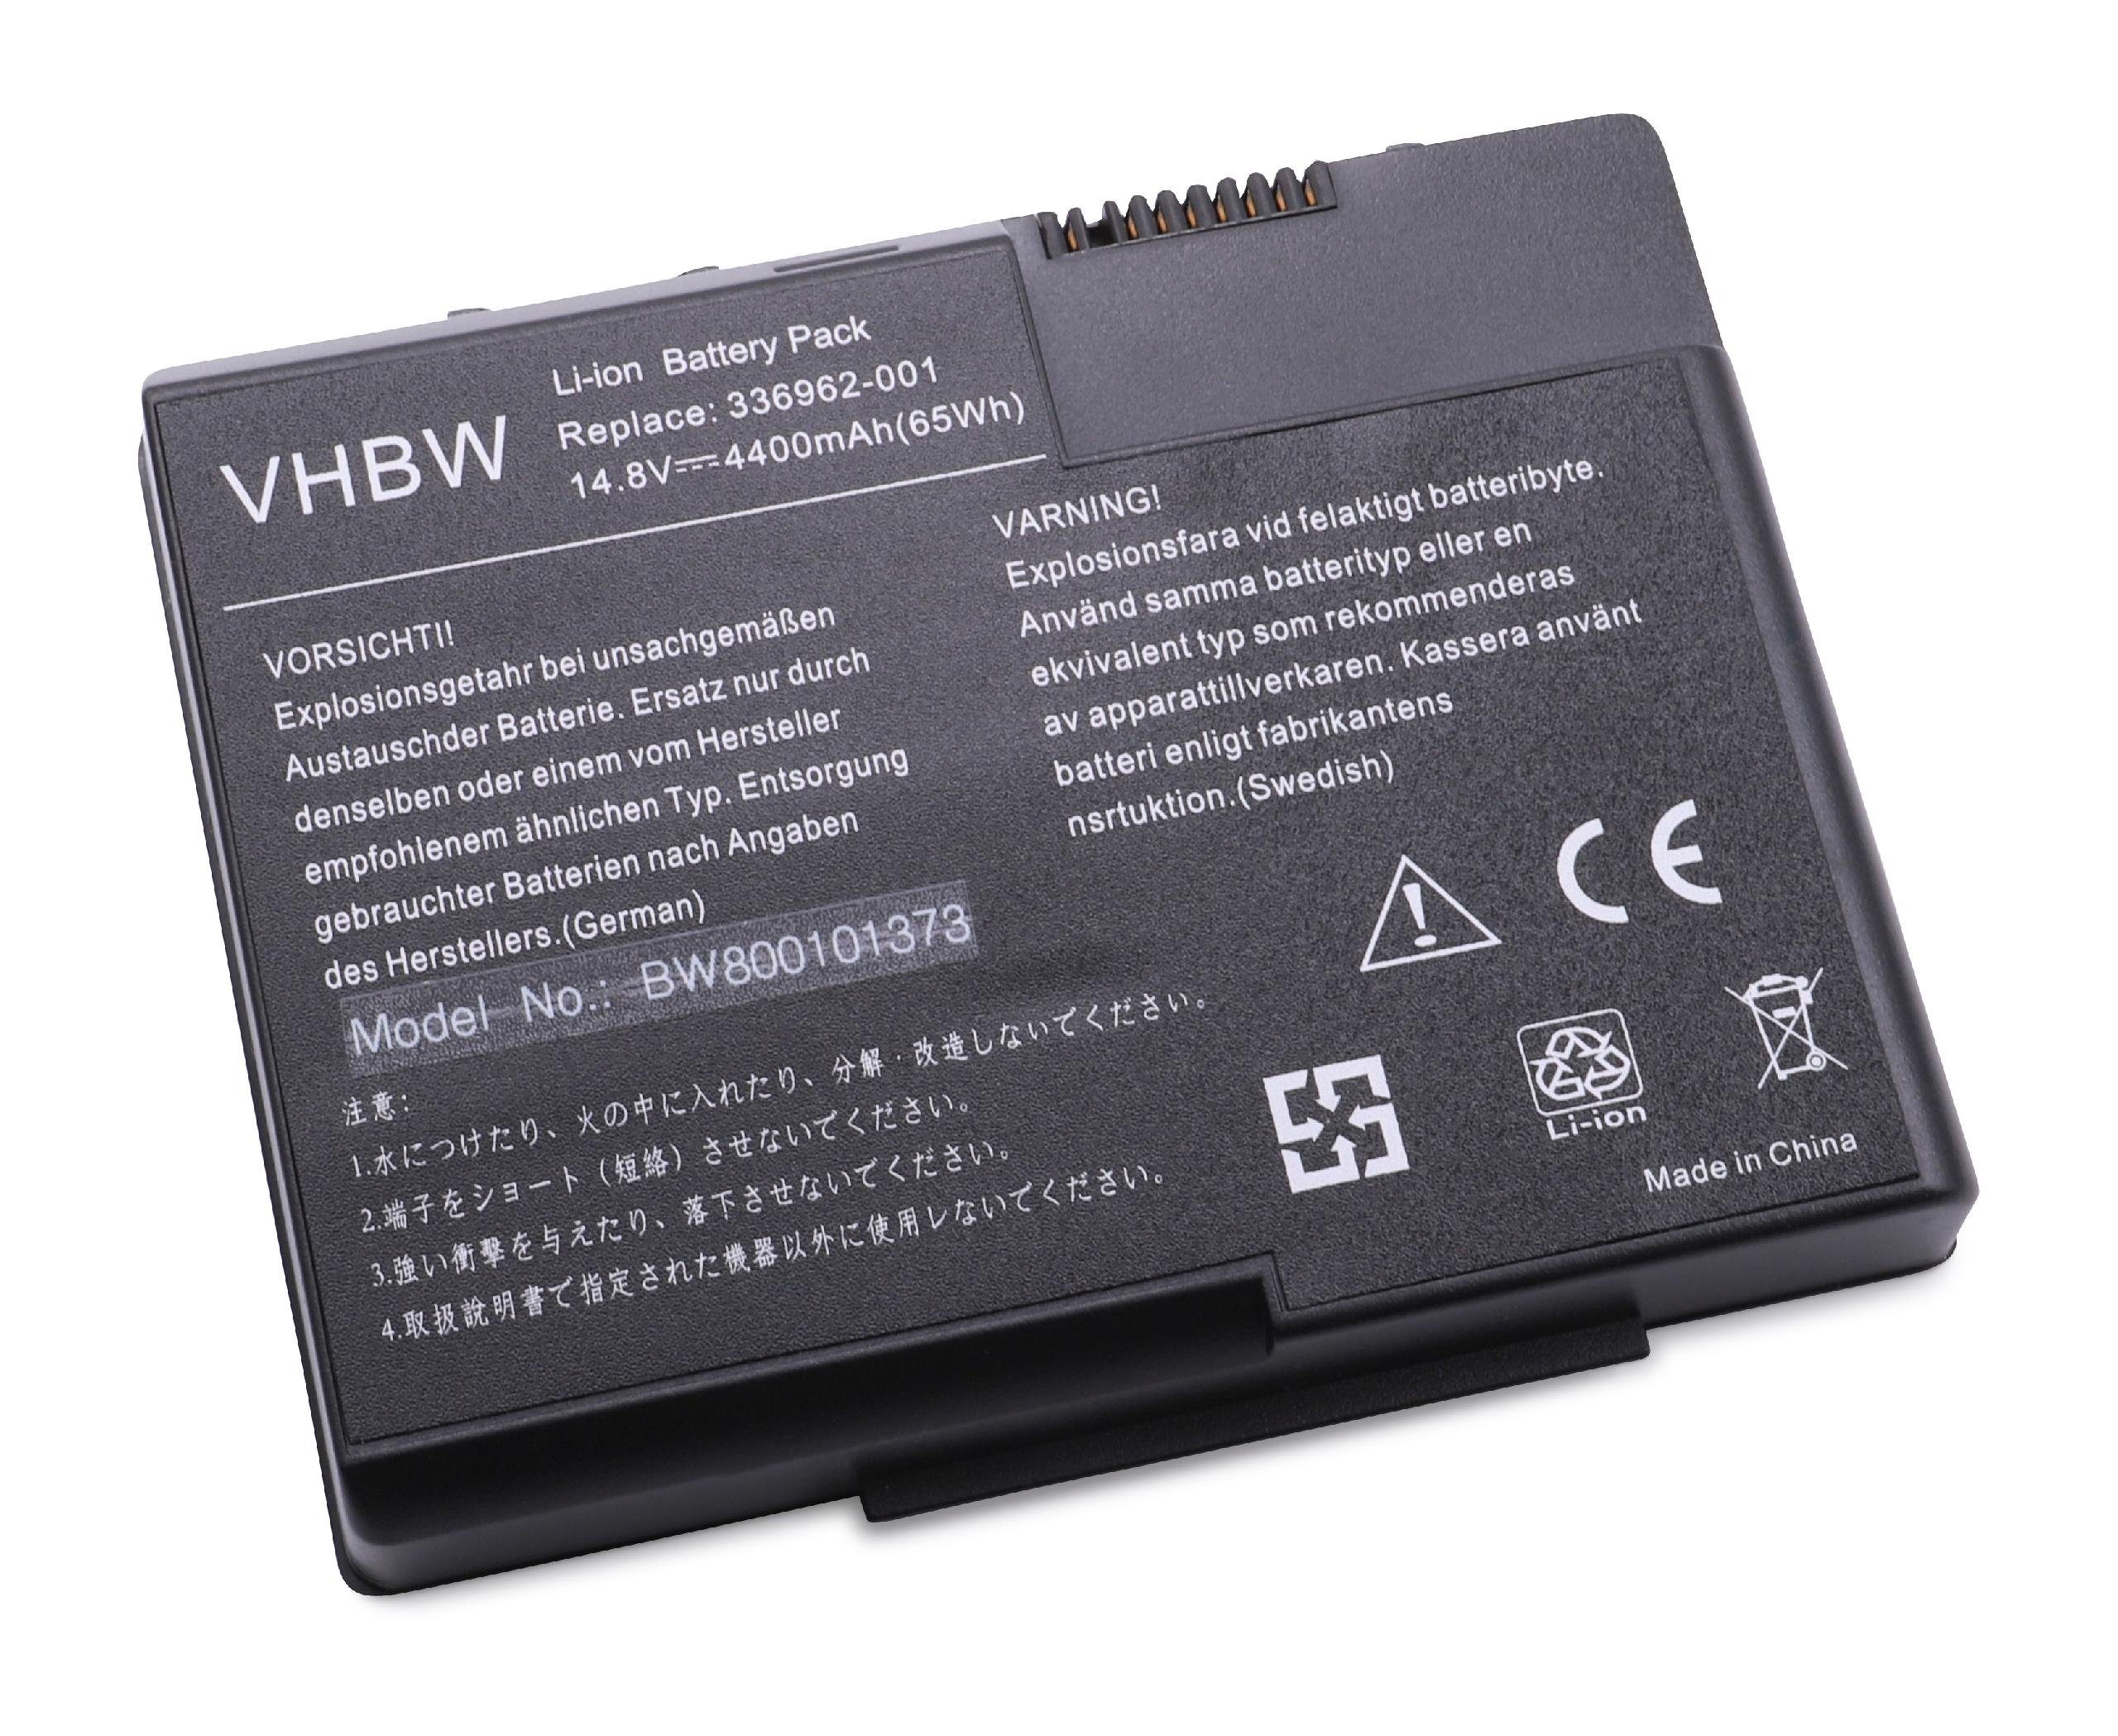 vhbw passend für HP Pavilion zt3300 (CTO) (PD711AV), zt3301AP (PH518PA), Laptop-Akku 4400 mAh